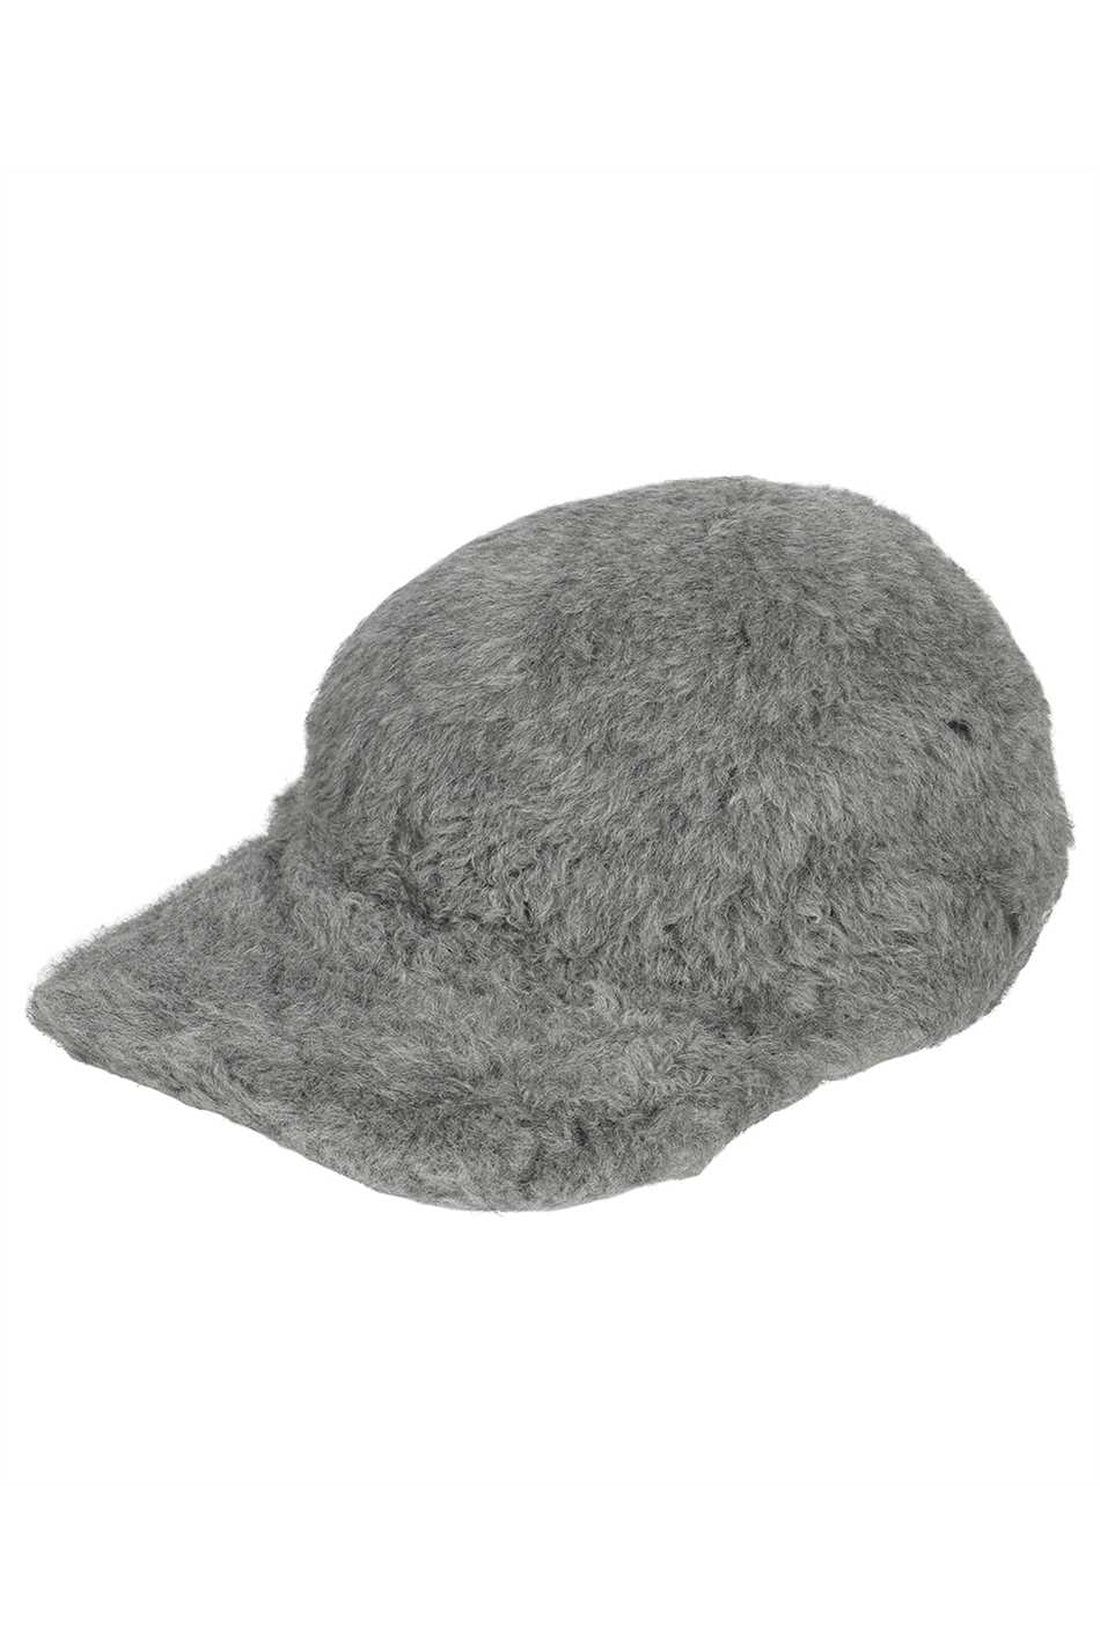 Max Mara-OUTLET-SALE-Gimmy Vegan fur hat-ARCHIVIST